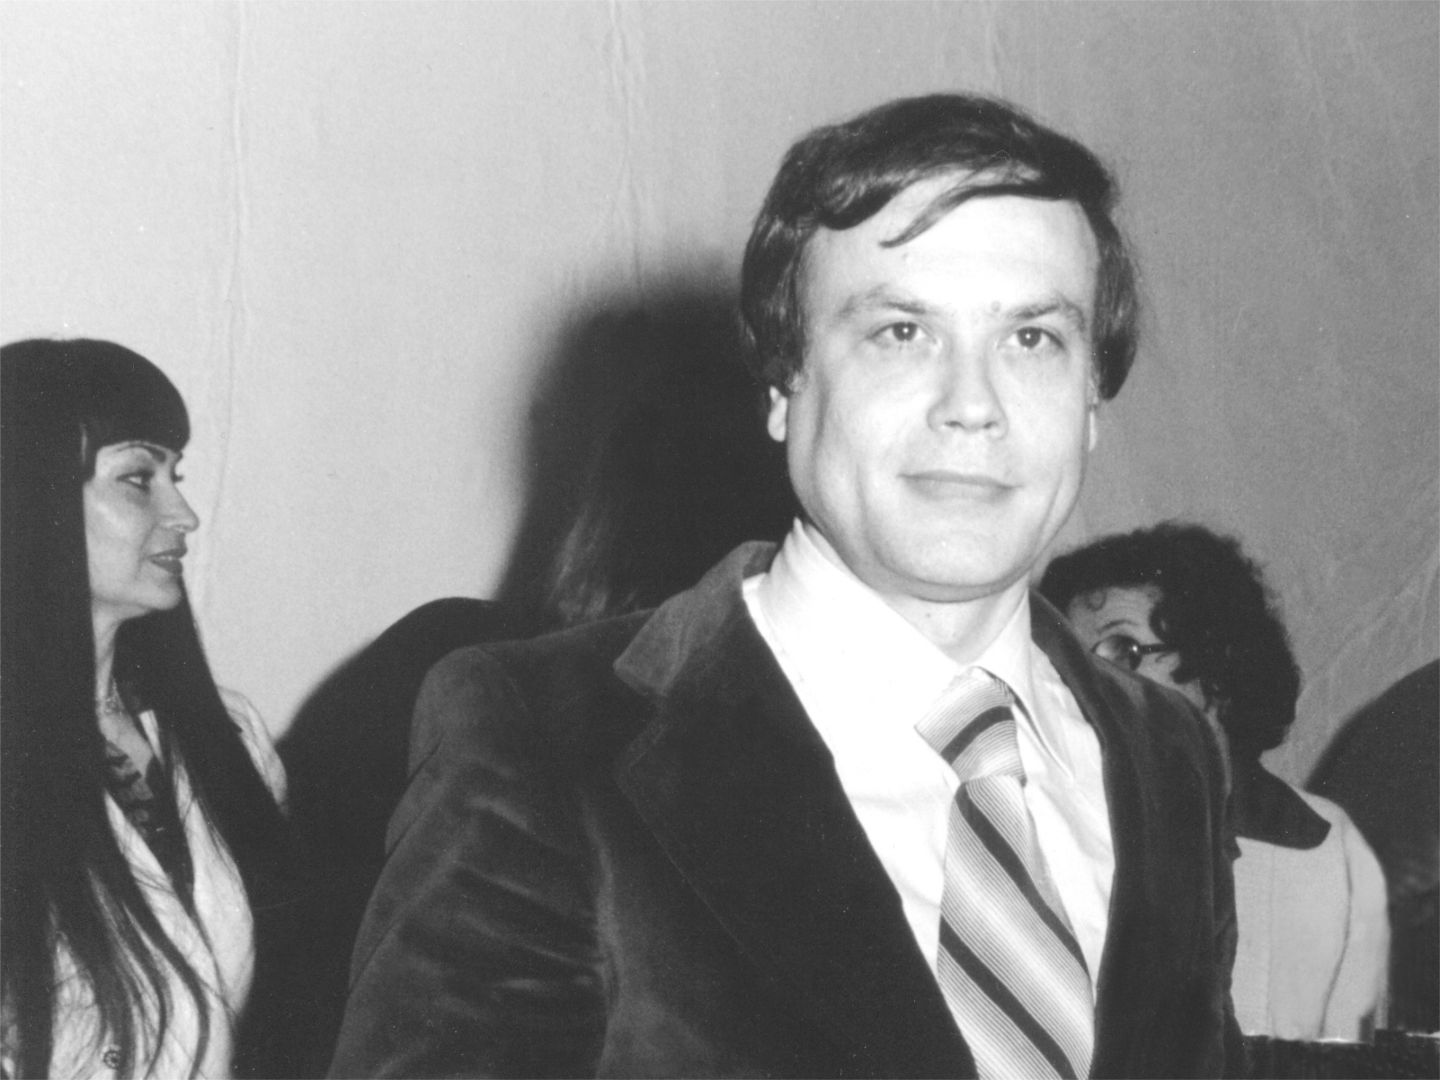 Premio speciale al concorso nazionale “La scure d’oro”, Robbio Lomellina - Pavia, 1978. A sinistra Paloma Picasso (figlia di Pablo Picasso) presidente della giuria.